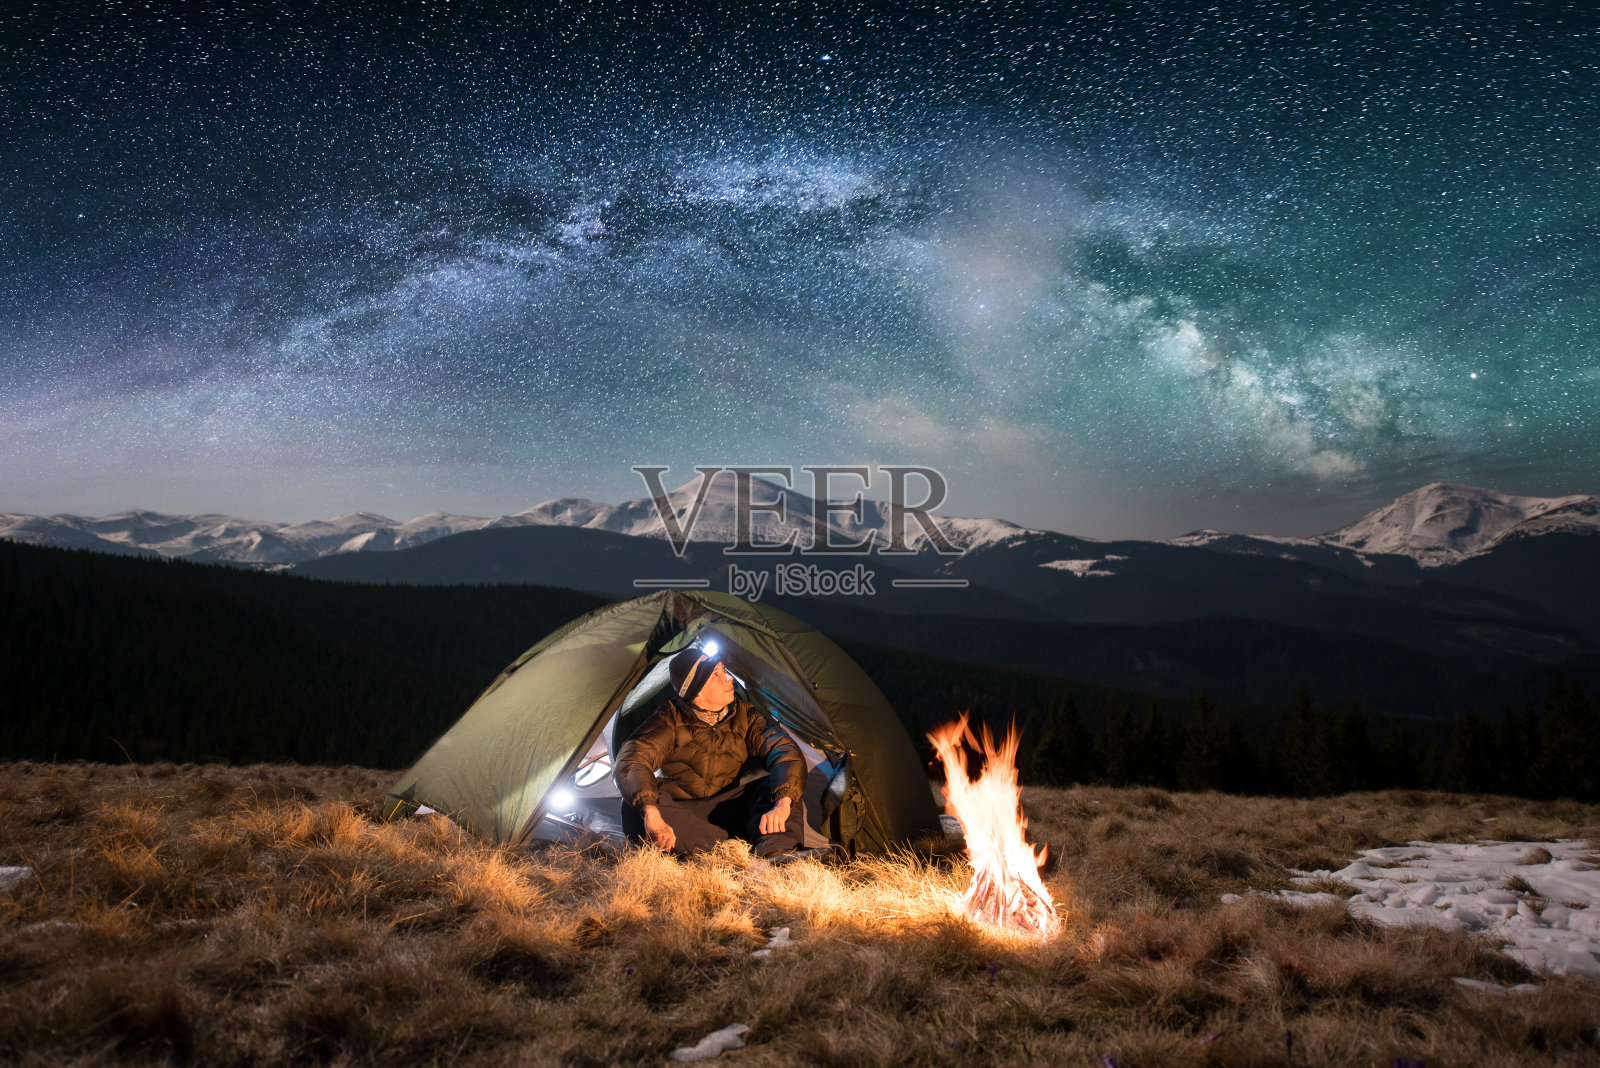 男游客晚上在山中露营休息。在满是星星和银河的美丽夜空下，一个带着头灯的男人坐在篝火和帐篷旁，欣赏着夜景照片摄影图片